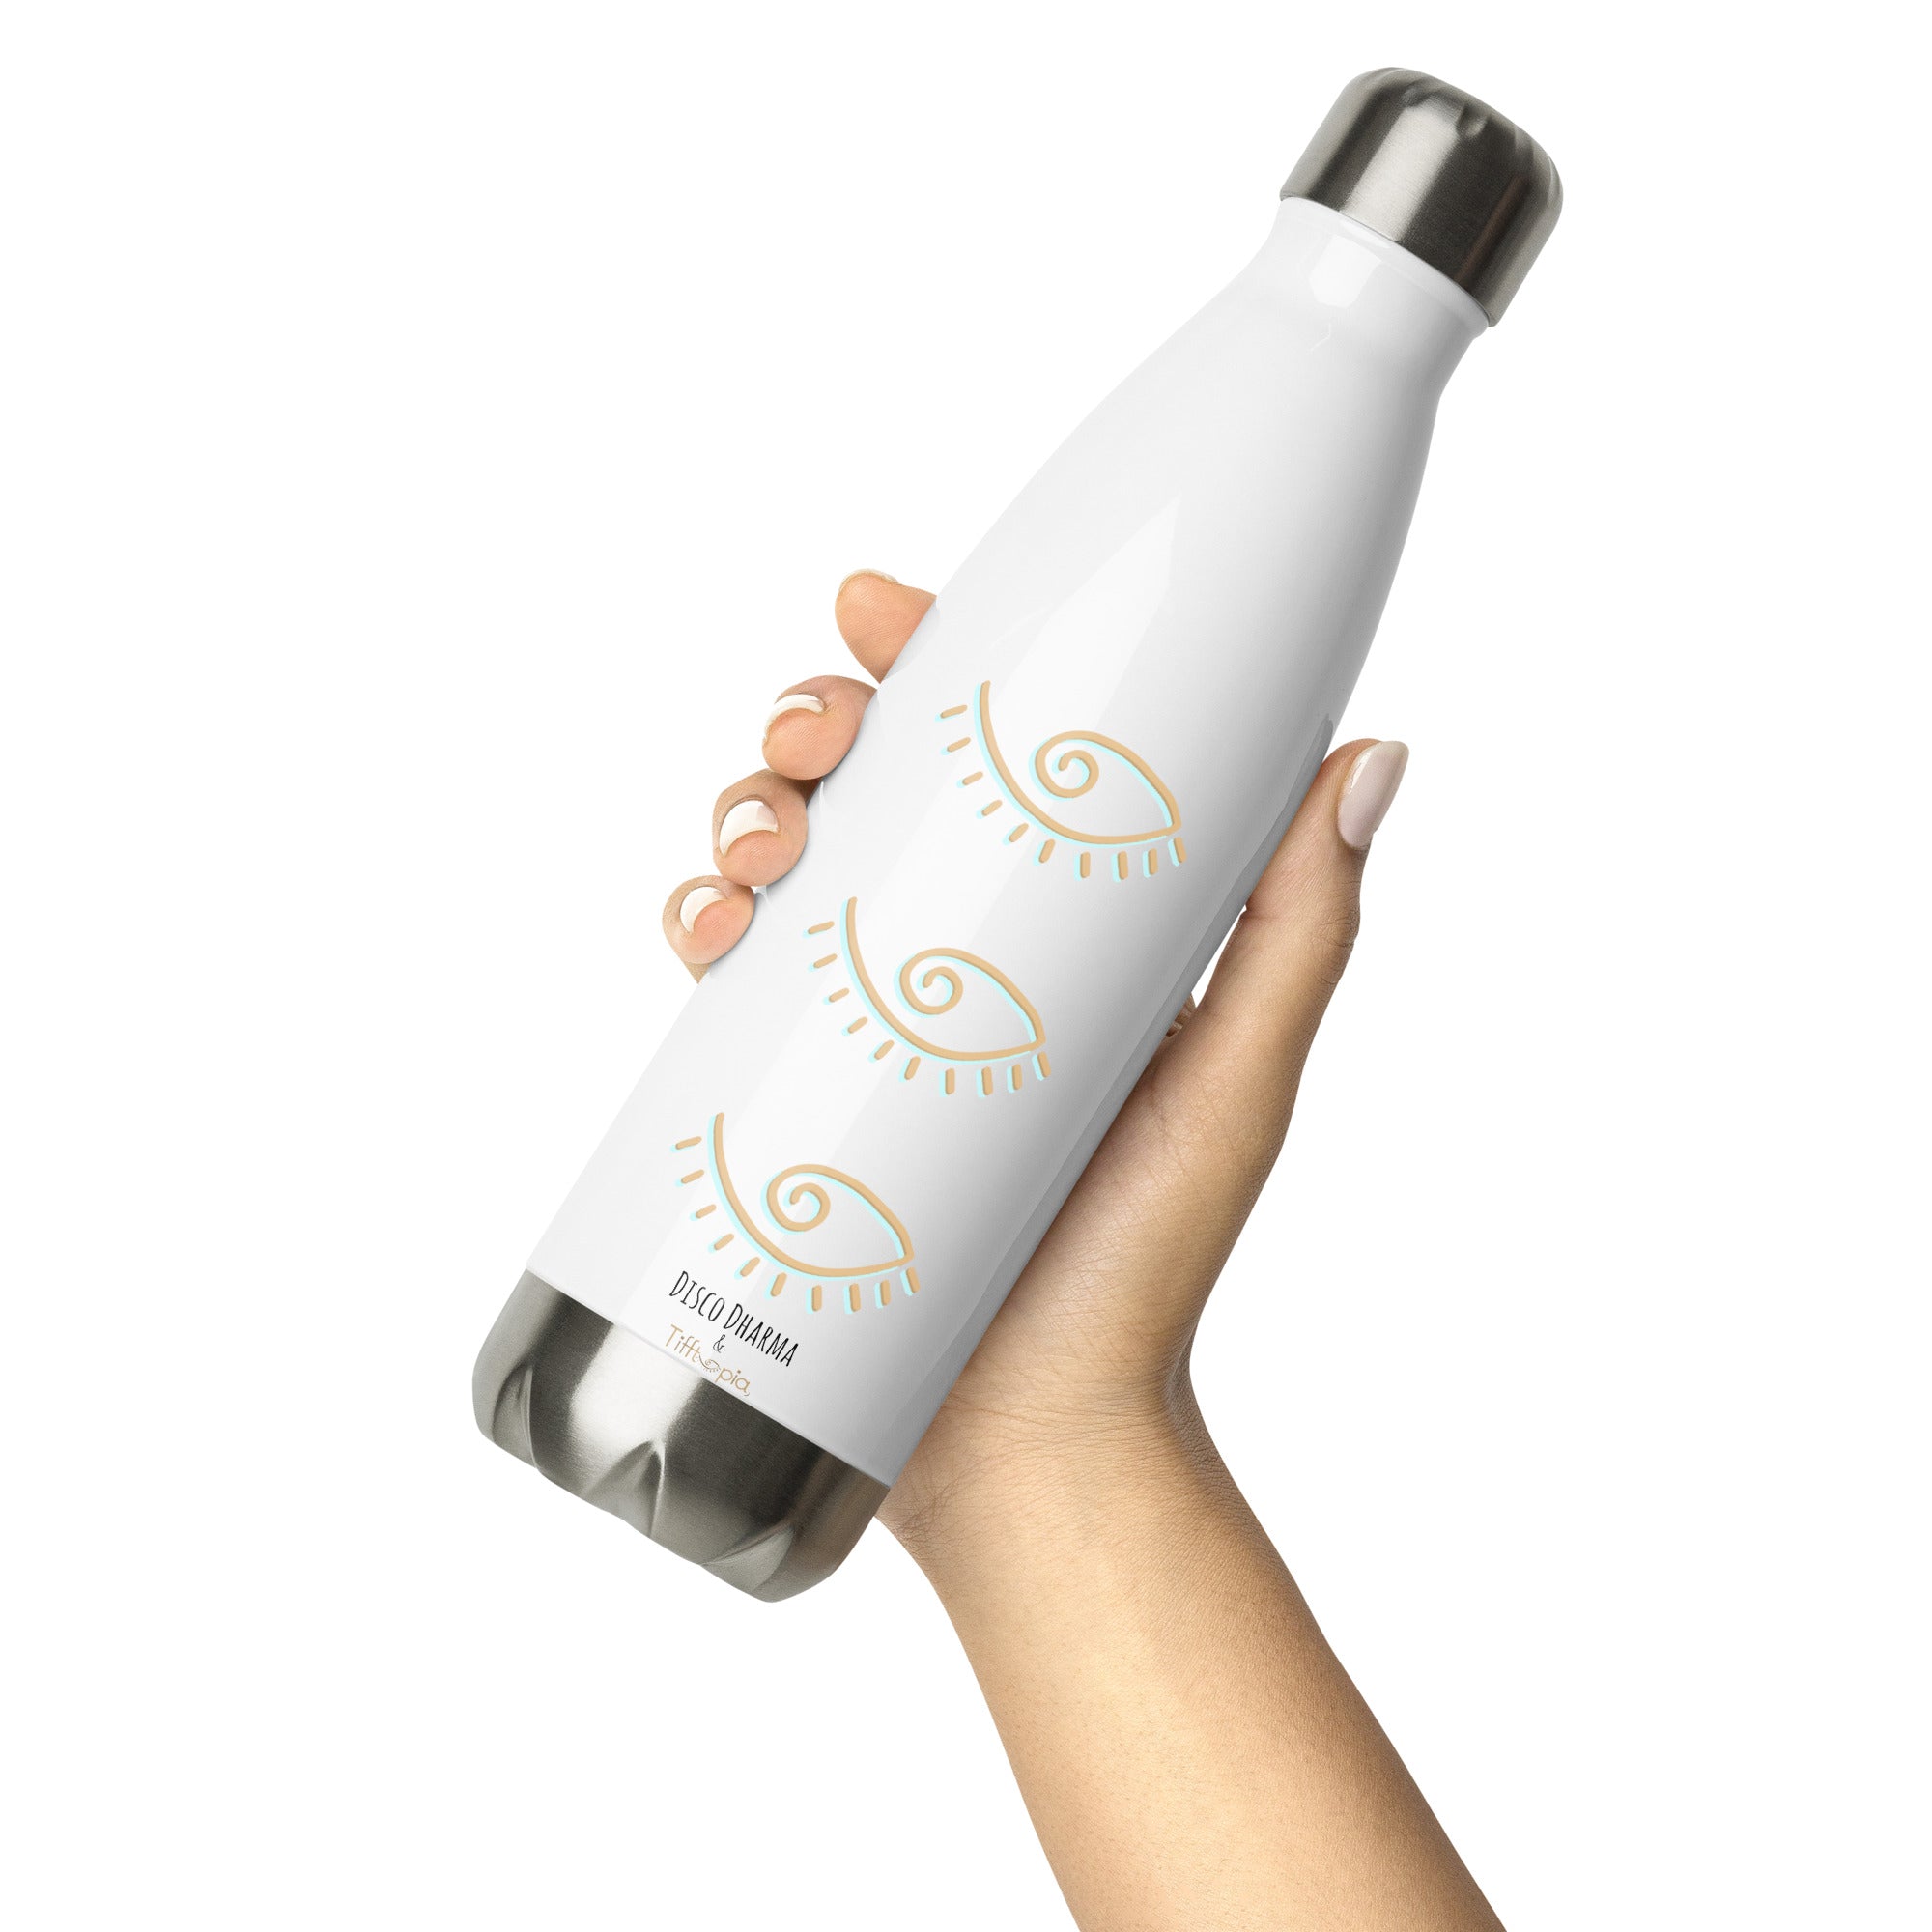 EOP Stainless steel water bottle